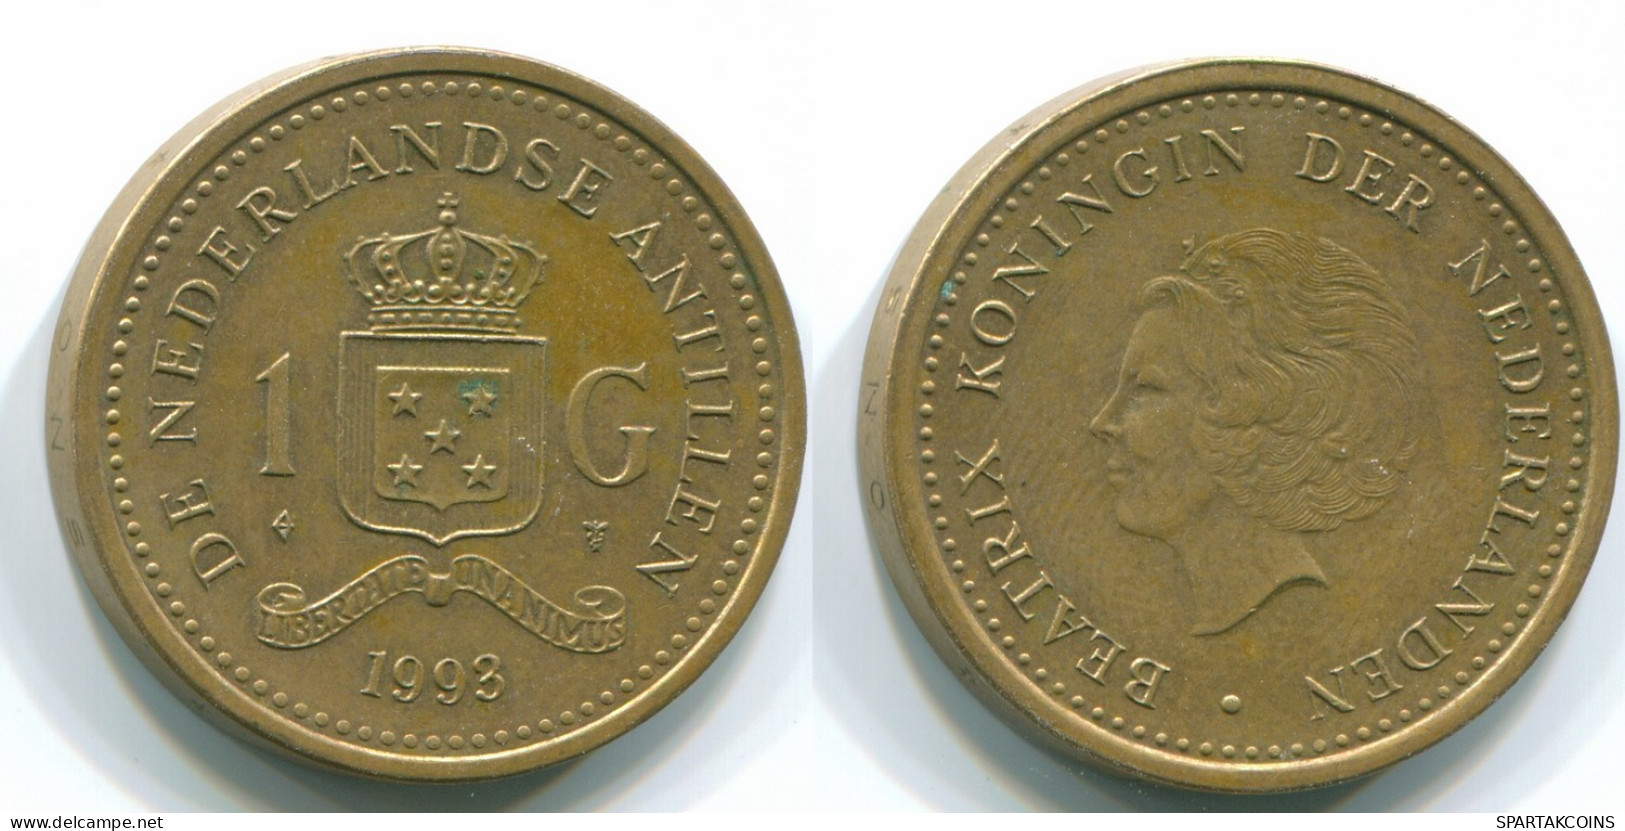 1 GULDEN 1993 NETHERLANDS ANTILLES Aureate Steel Colonial Coin #S12158.U.A - Niederländische Antillen